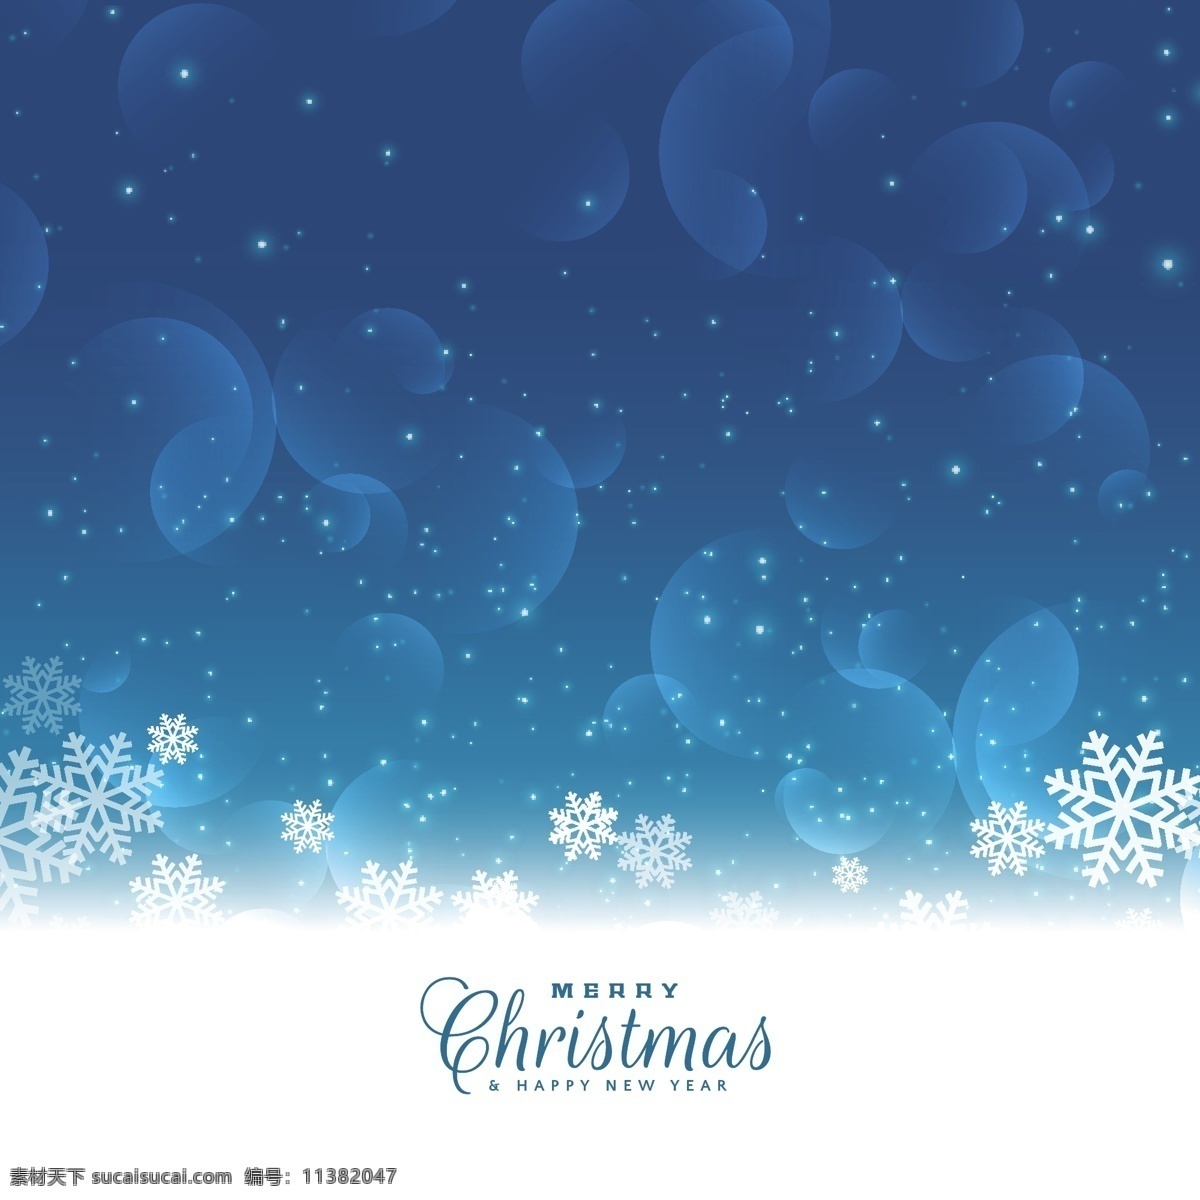 圣诞 雪花 矢量 蓝色 背景 蓝色背景 圣诞雪花背景 矢量蓝色背景 雪花背景 雪花素材